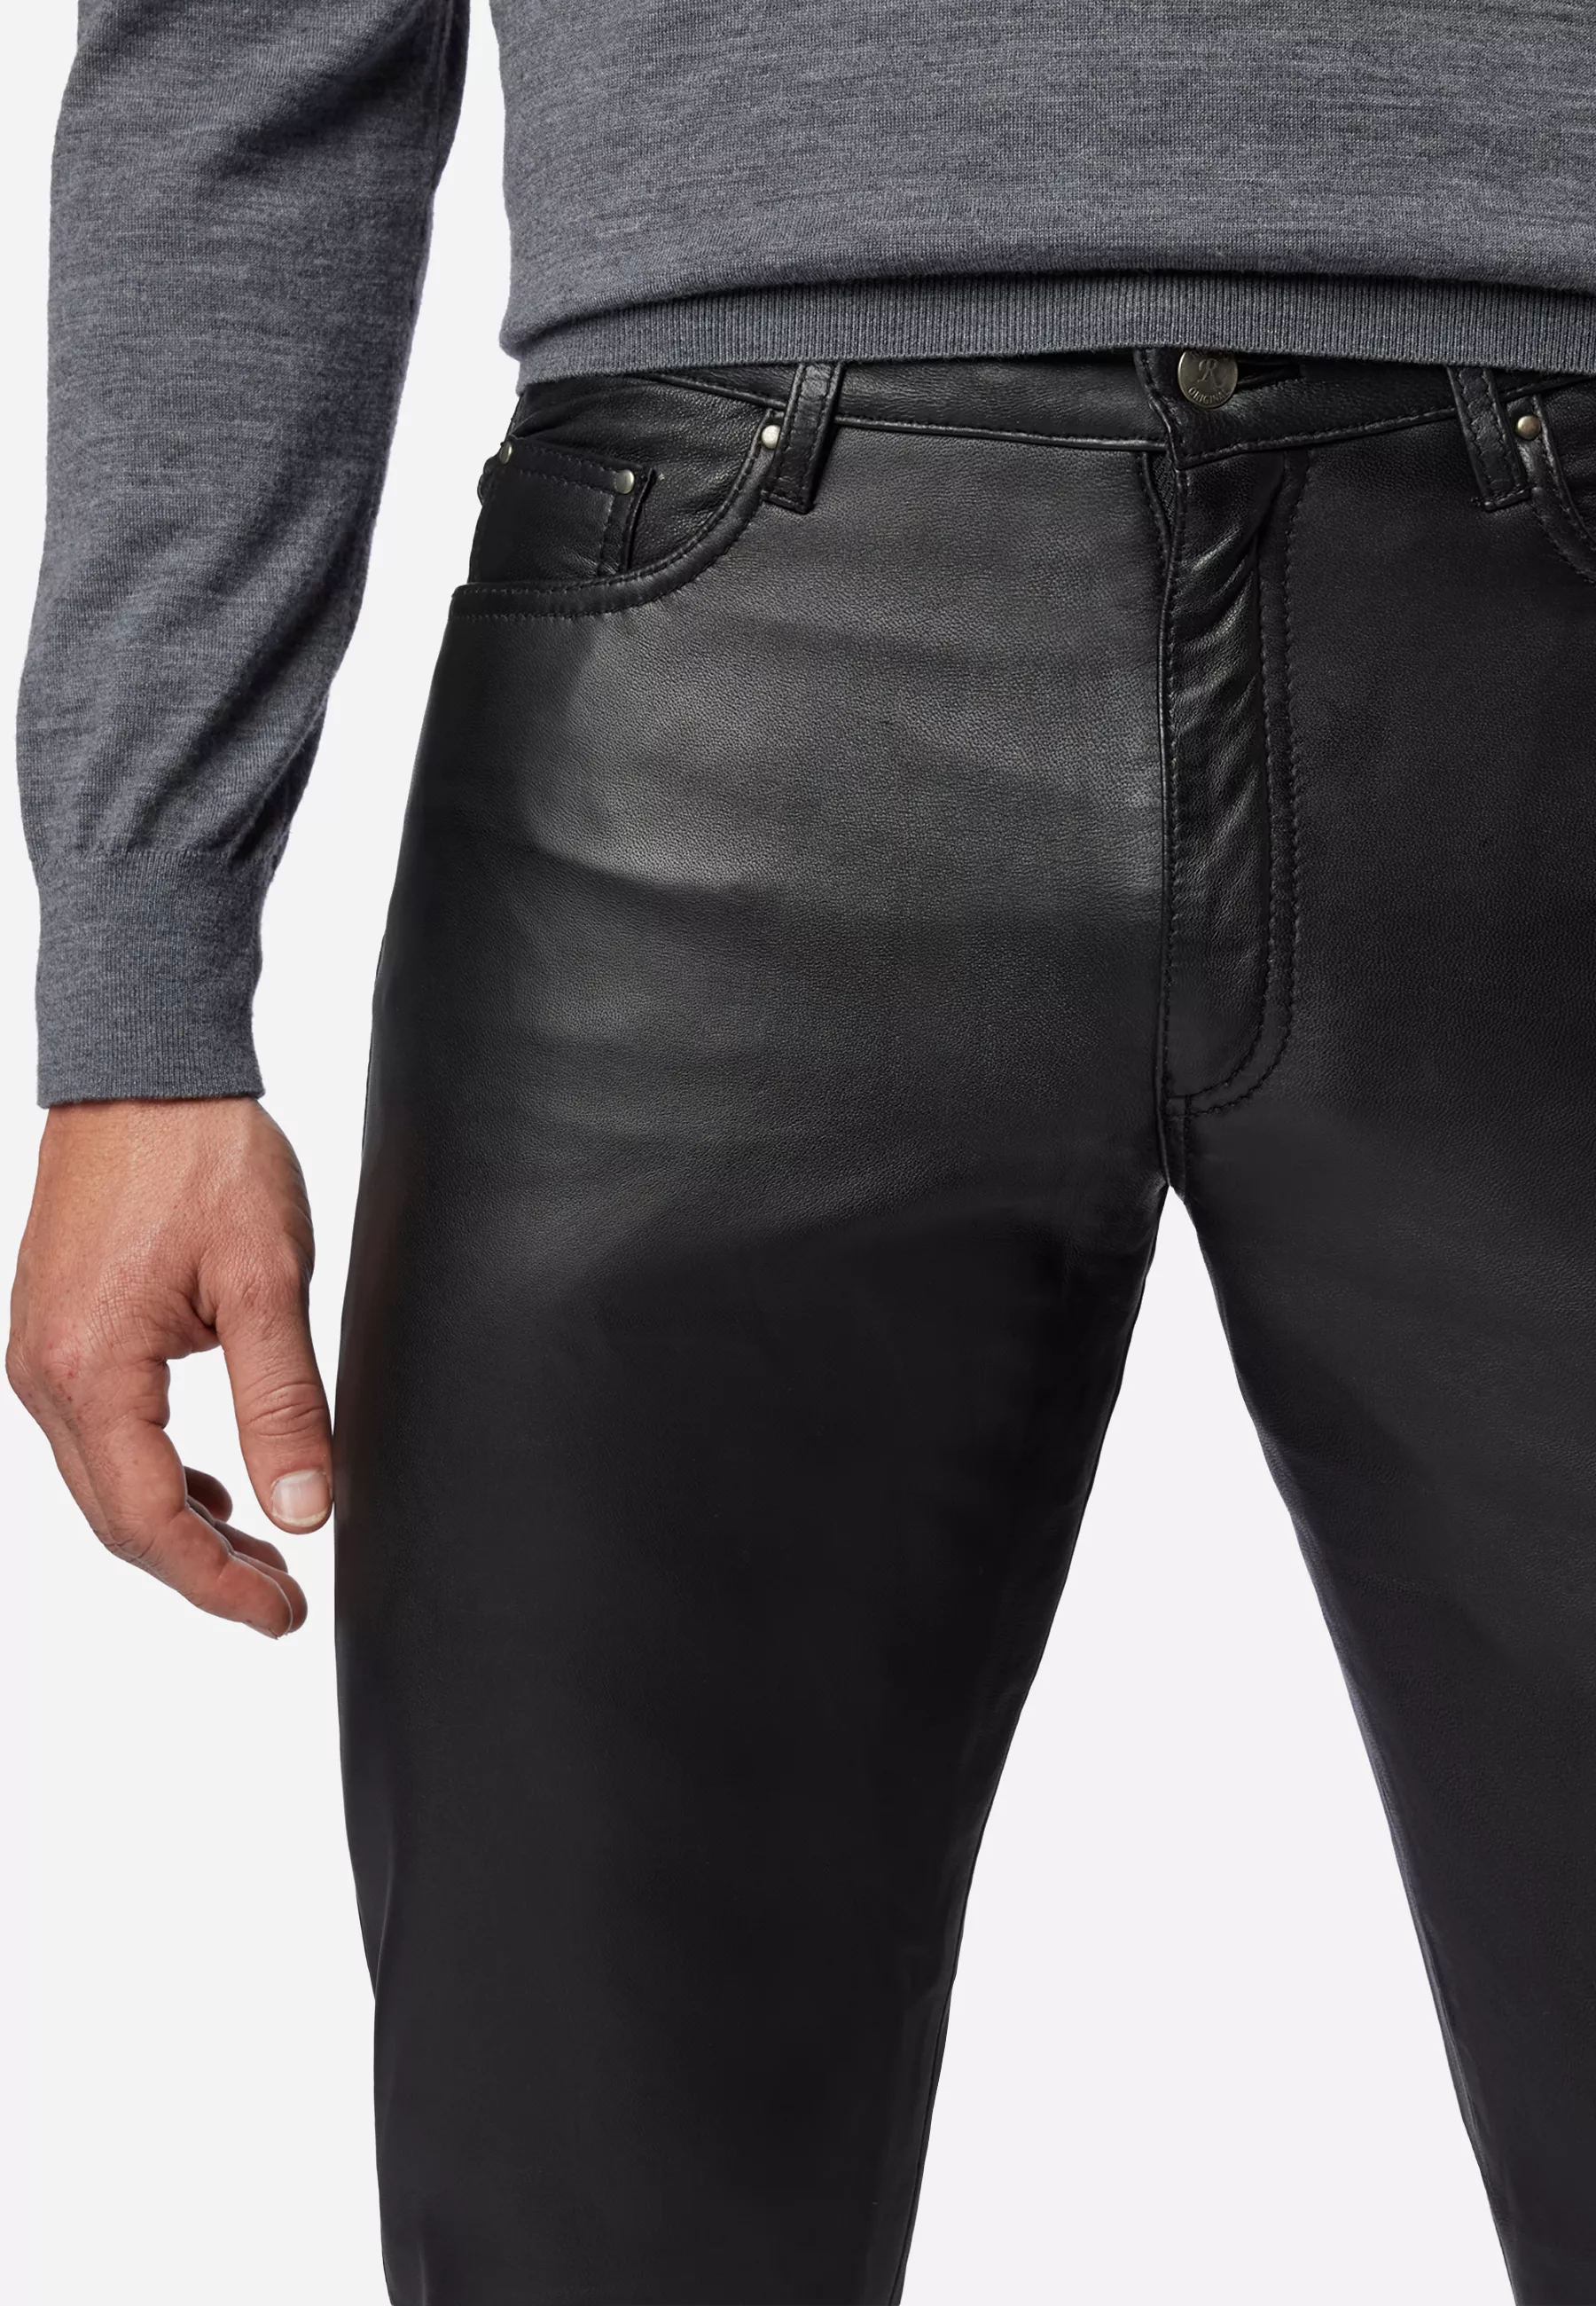 Herren Lederhose No. 3 TR Jeans in Schwarz von Ricano, Detailansicht vom Five Pocket Look am Model